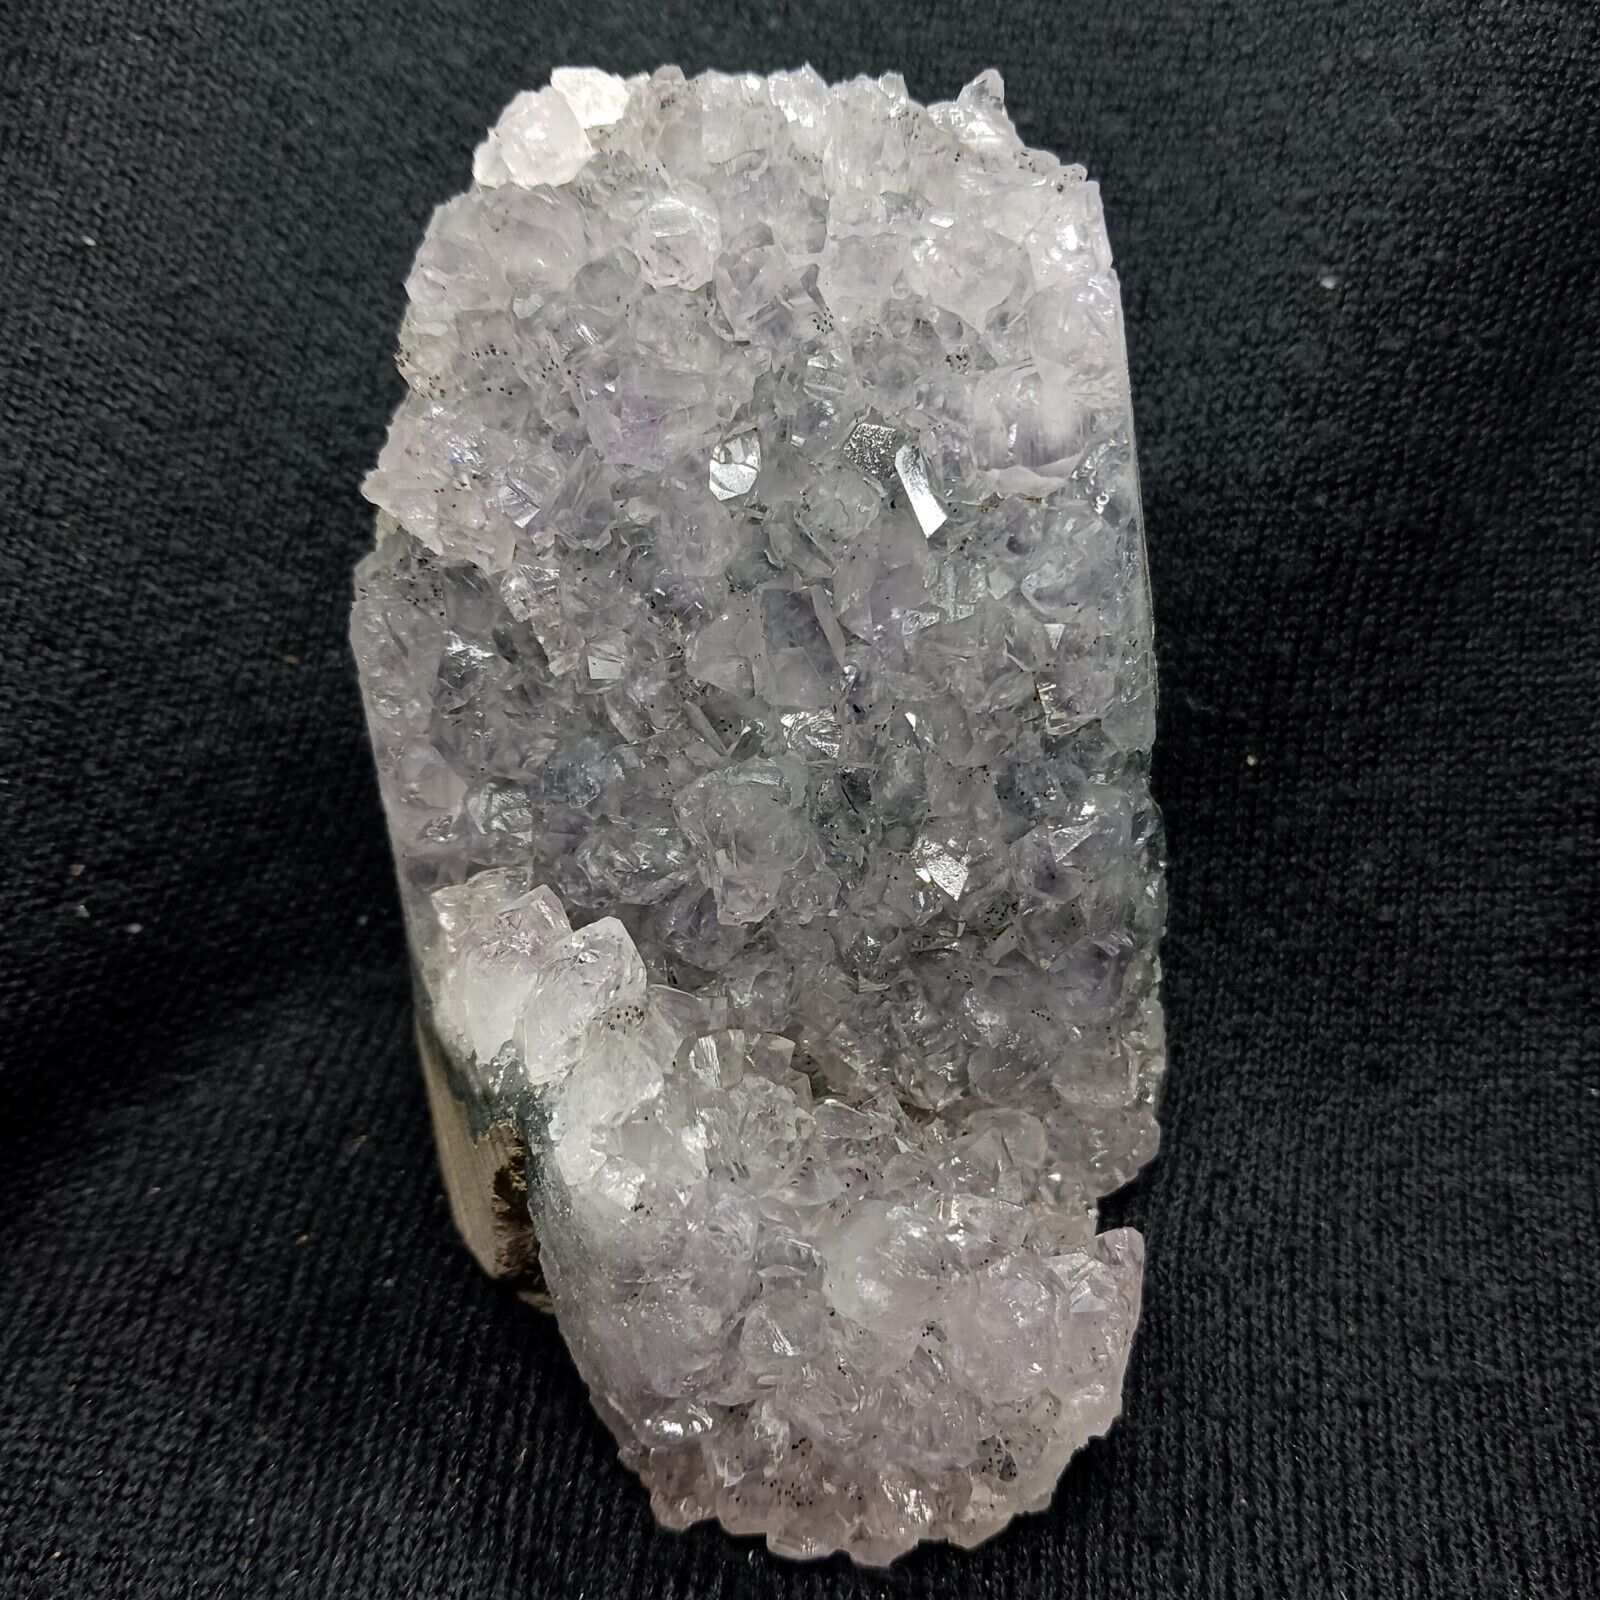 Gray amethyst crystal cluster sparkling amethyst geode cut base black amethyst 